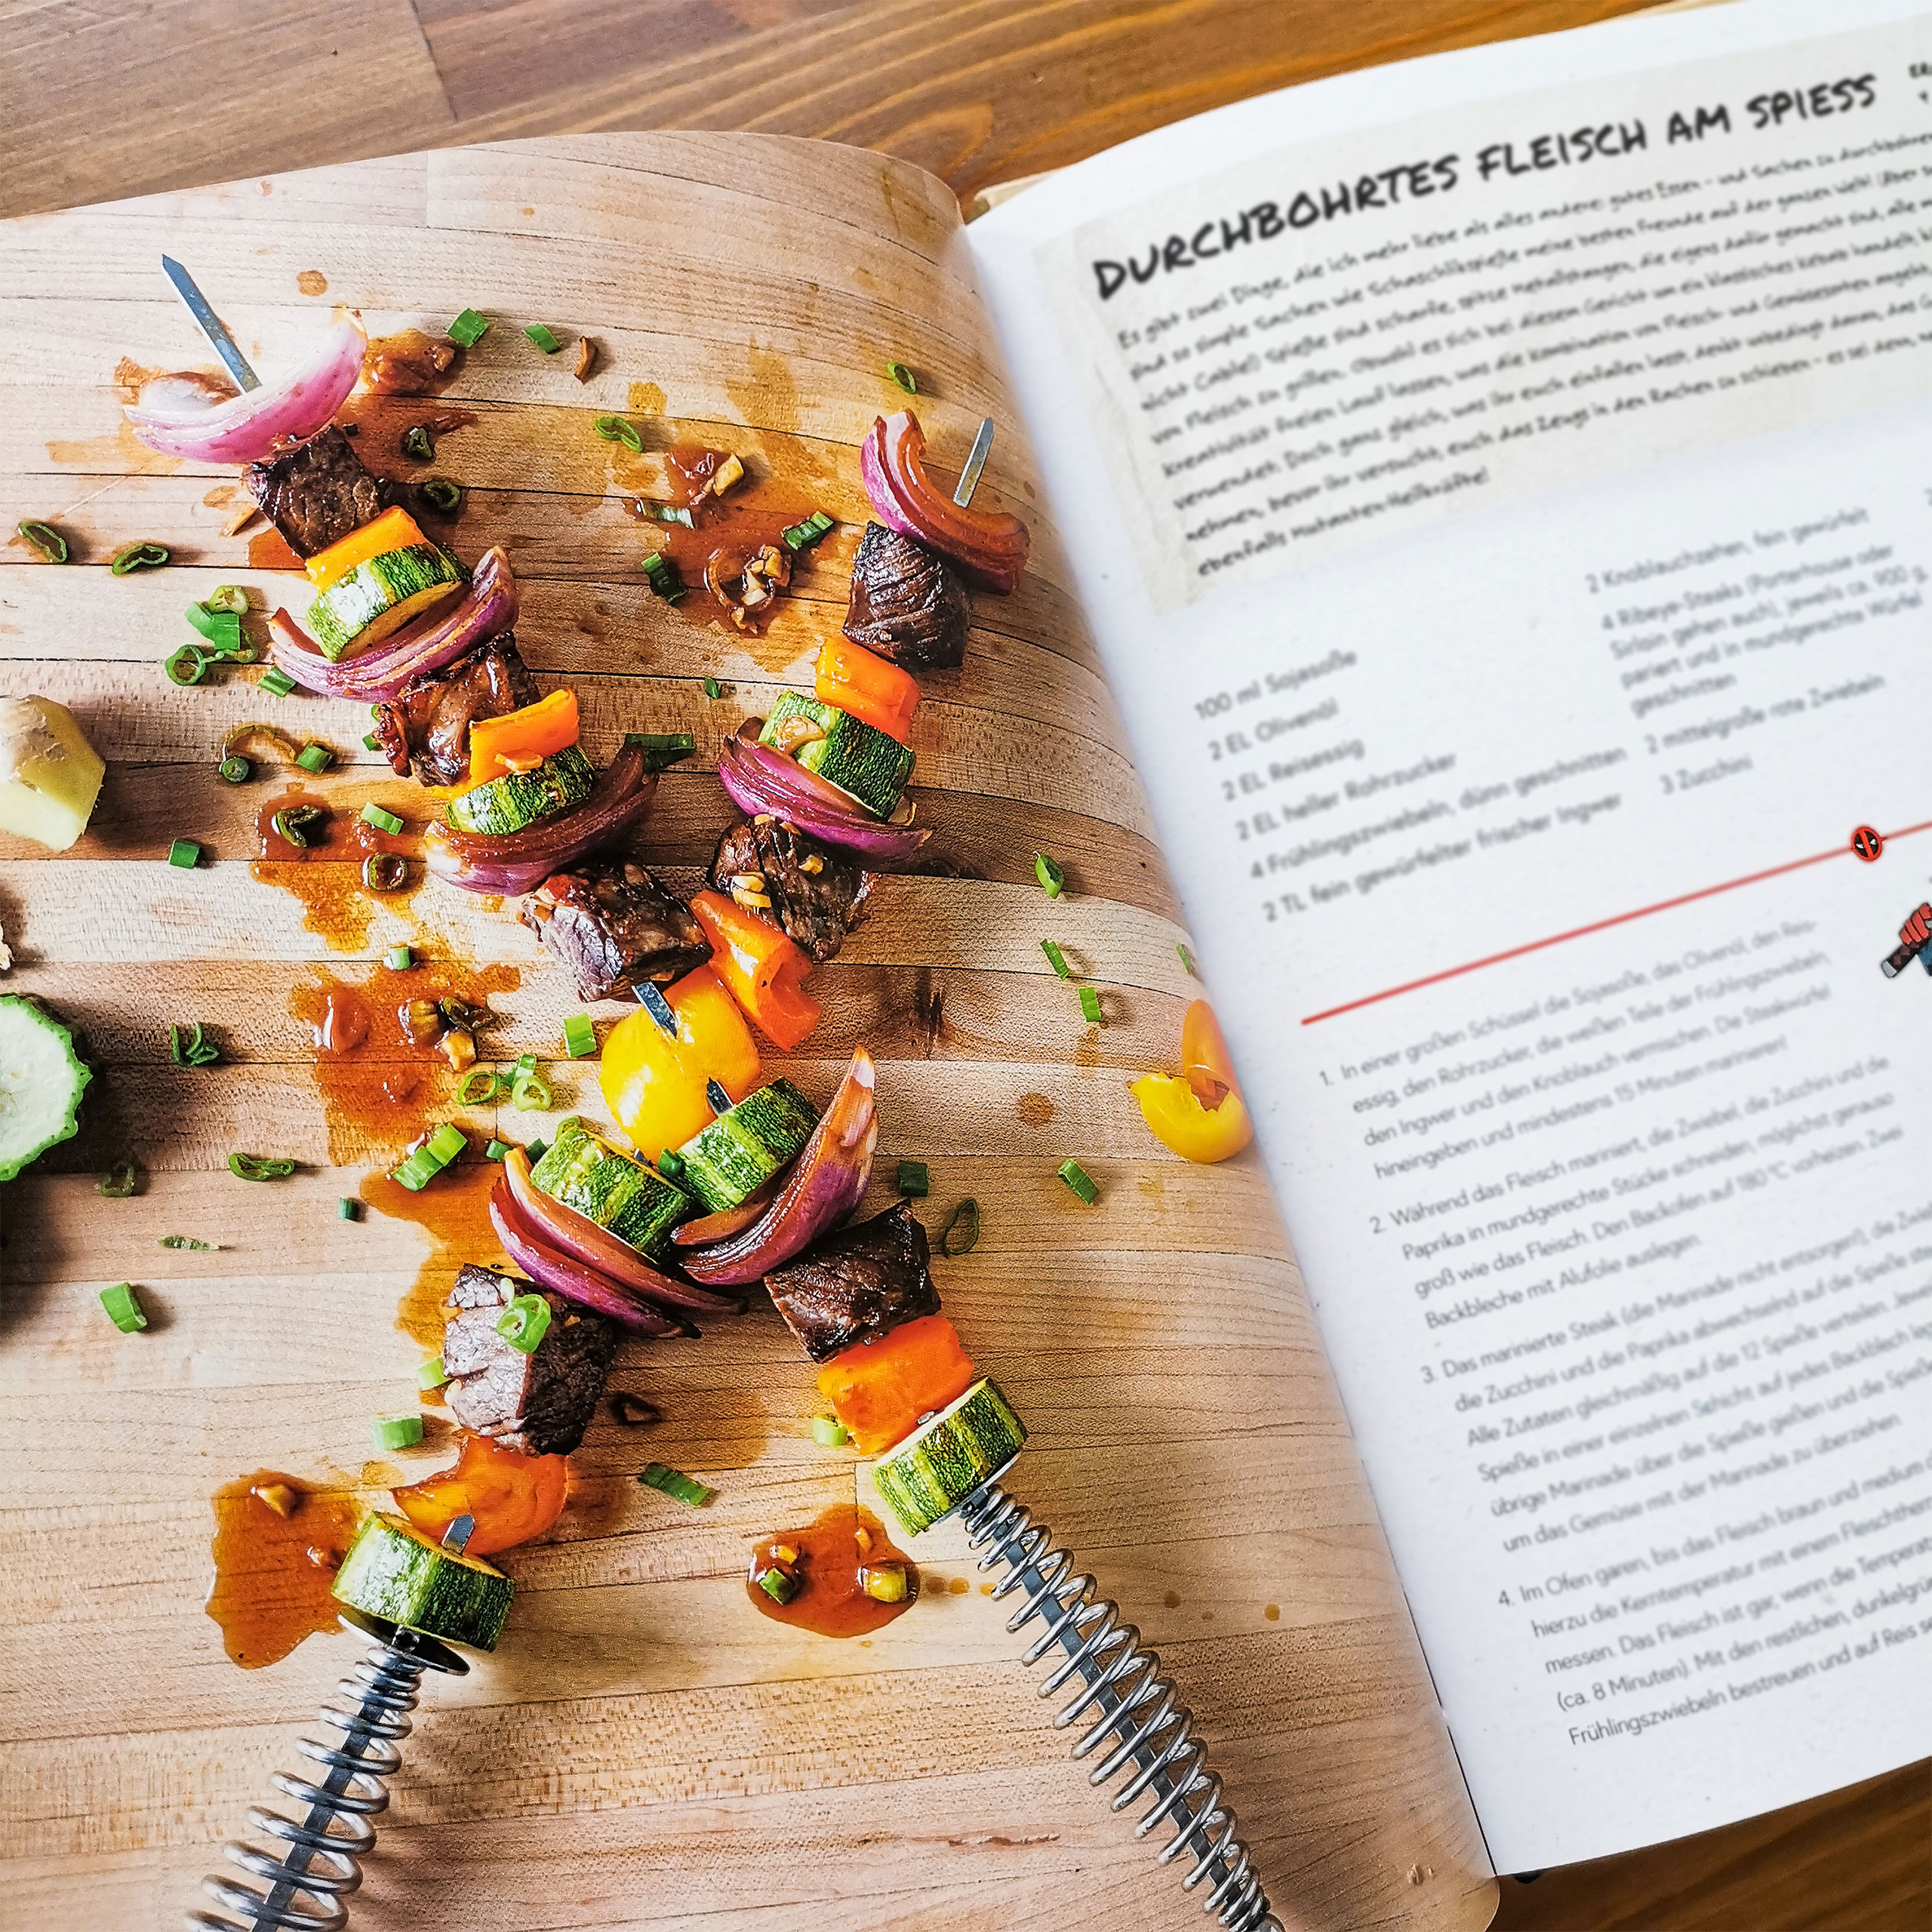 Cuisiner avec Deadpool - Le livre de cuisine officiel